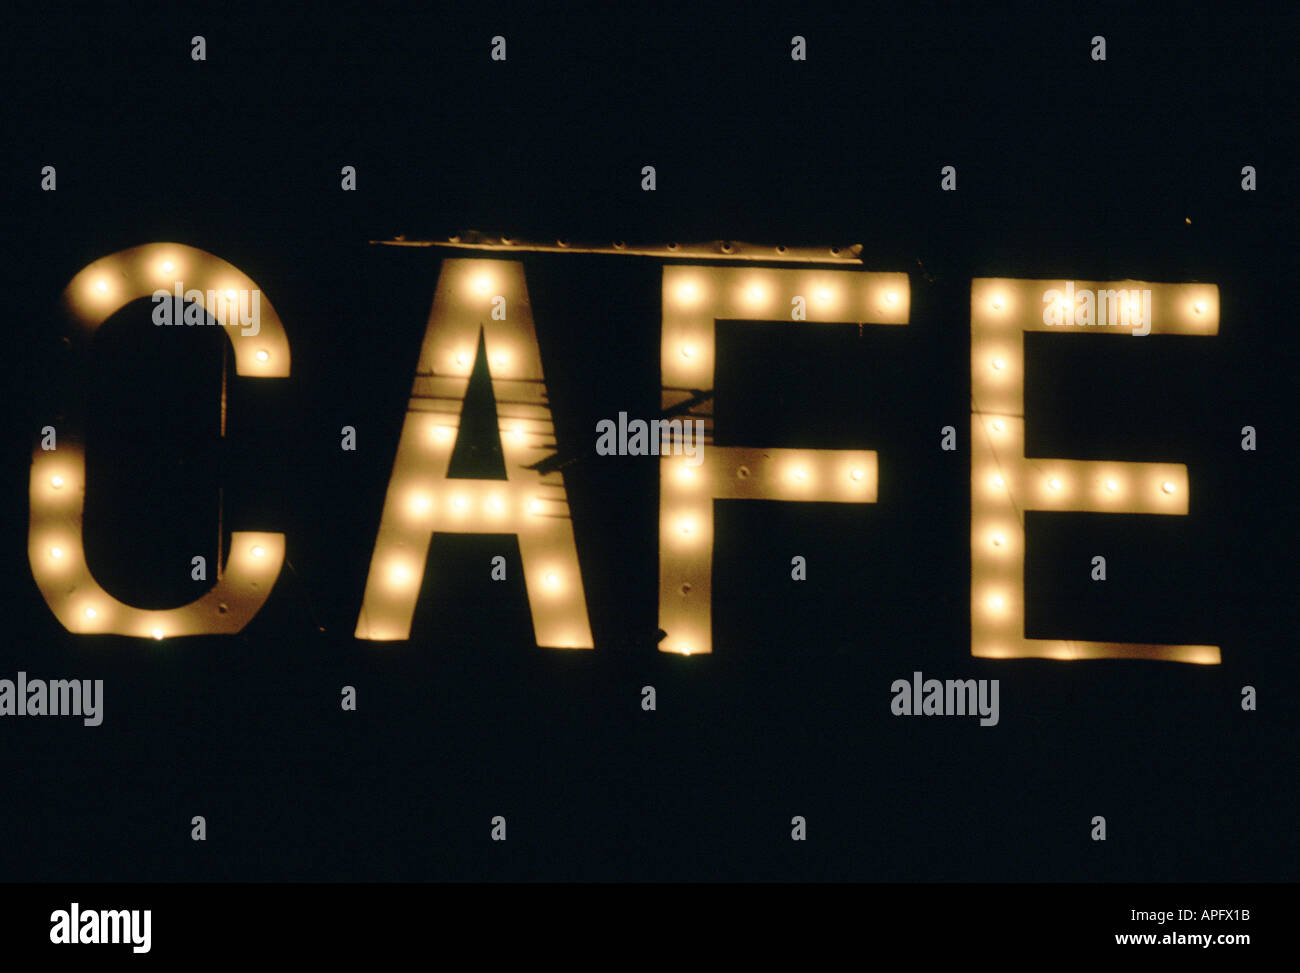 CAFE signe, éclairé la nuit, California, USA Banque D'Images